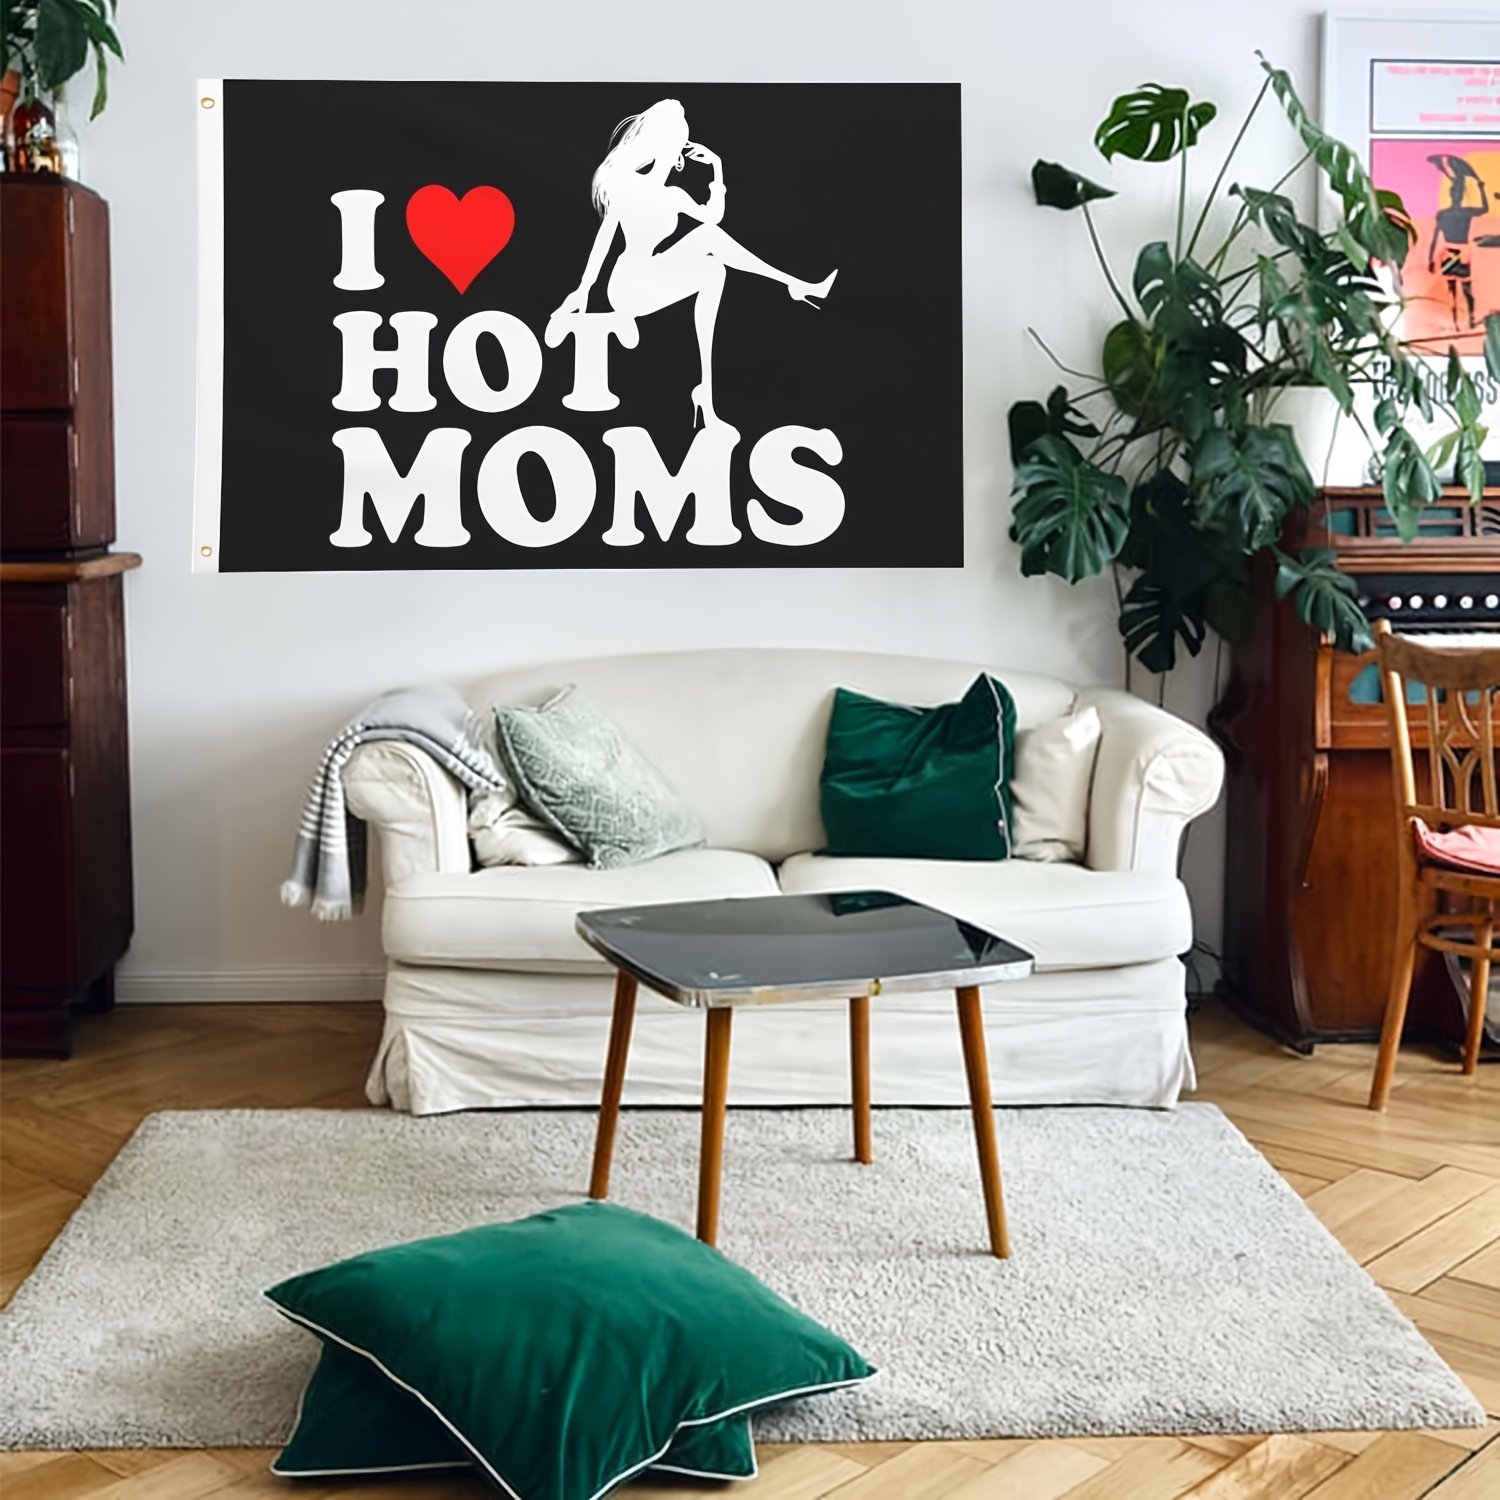 I Love Hot Moms Flag 3x5 ft Outdoor, Heavy Duty I Heart Hot Moms